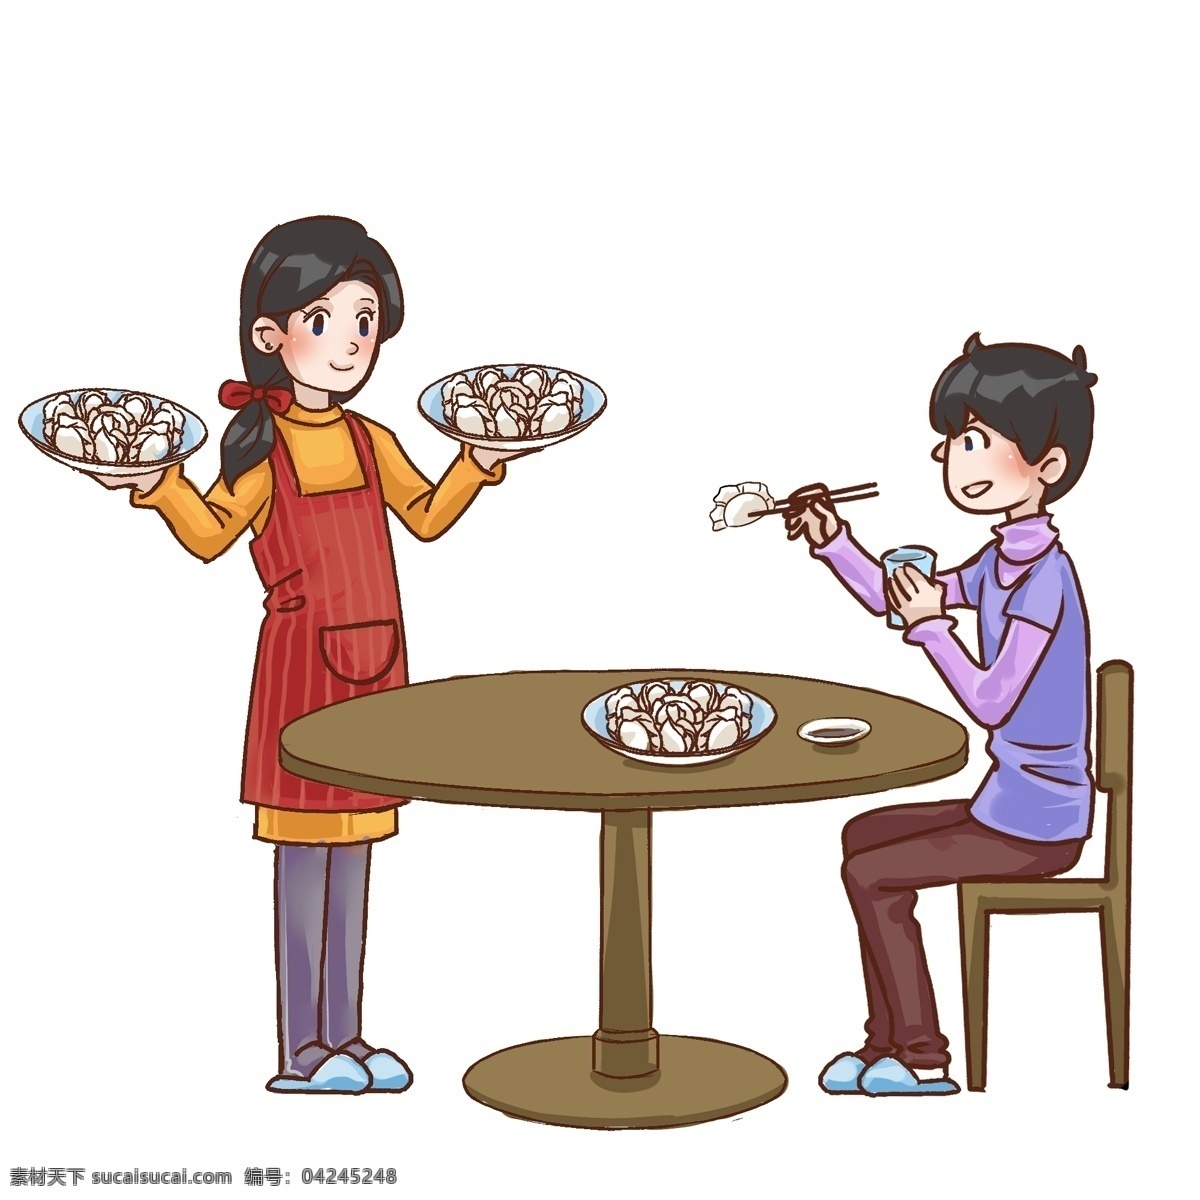 冬至 吃 饺子 年轻人 版本 中国传统节日 夫妻恩爱 节日快乐 卡通漫画 宣传画 中国传统食材